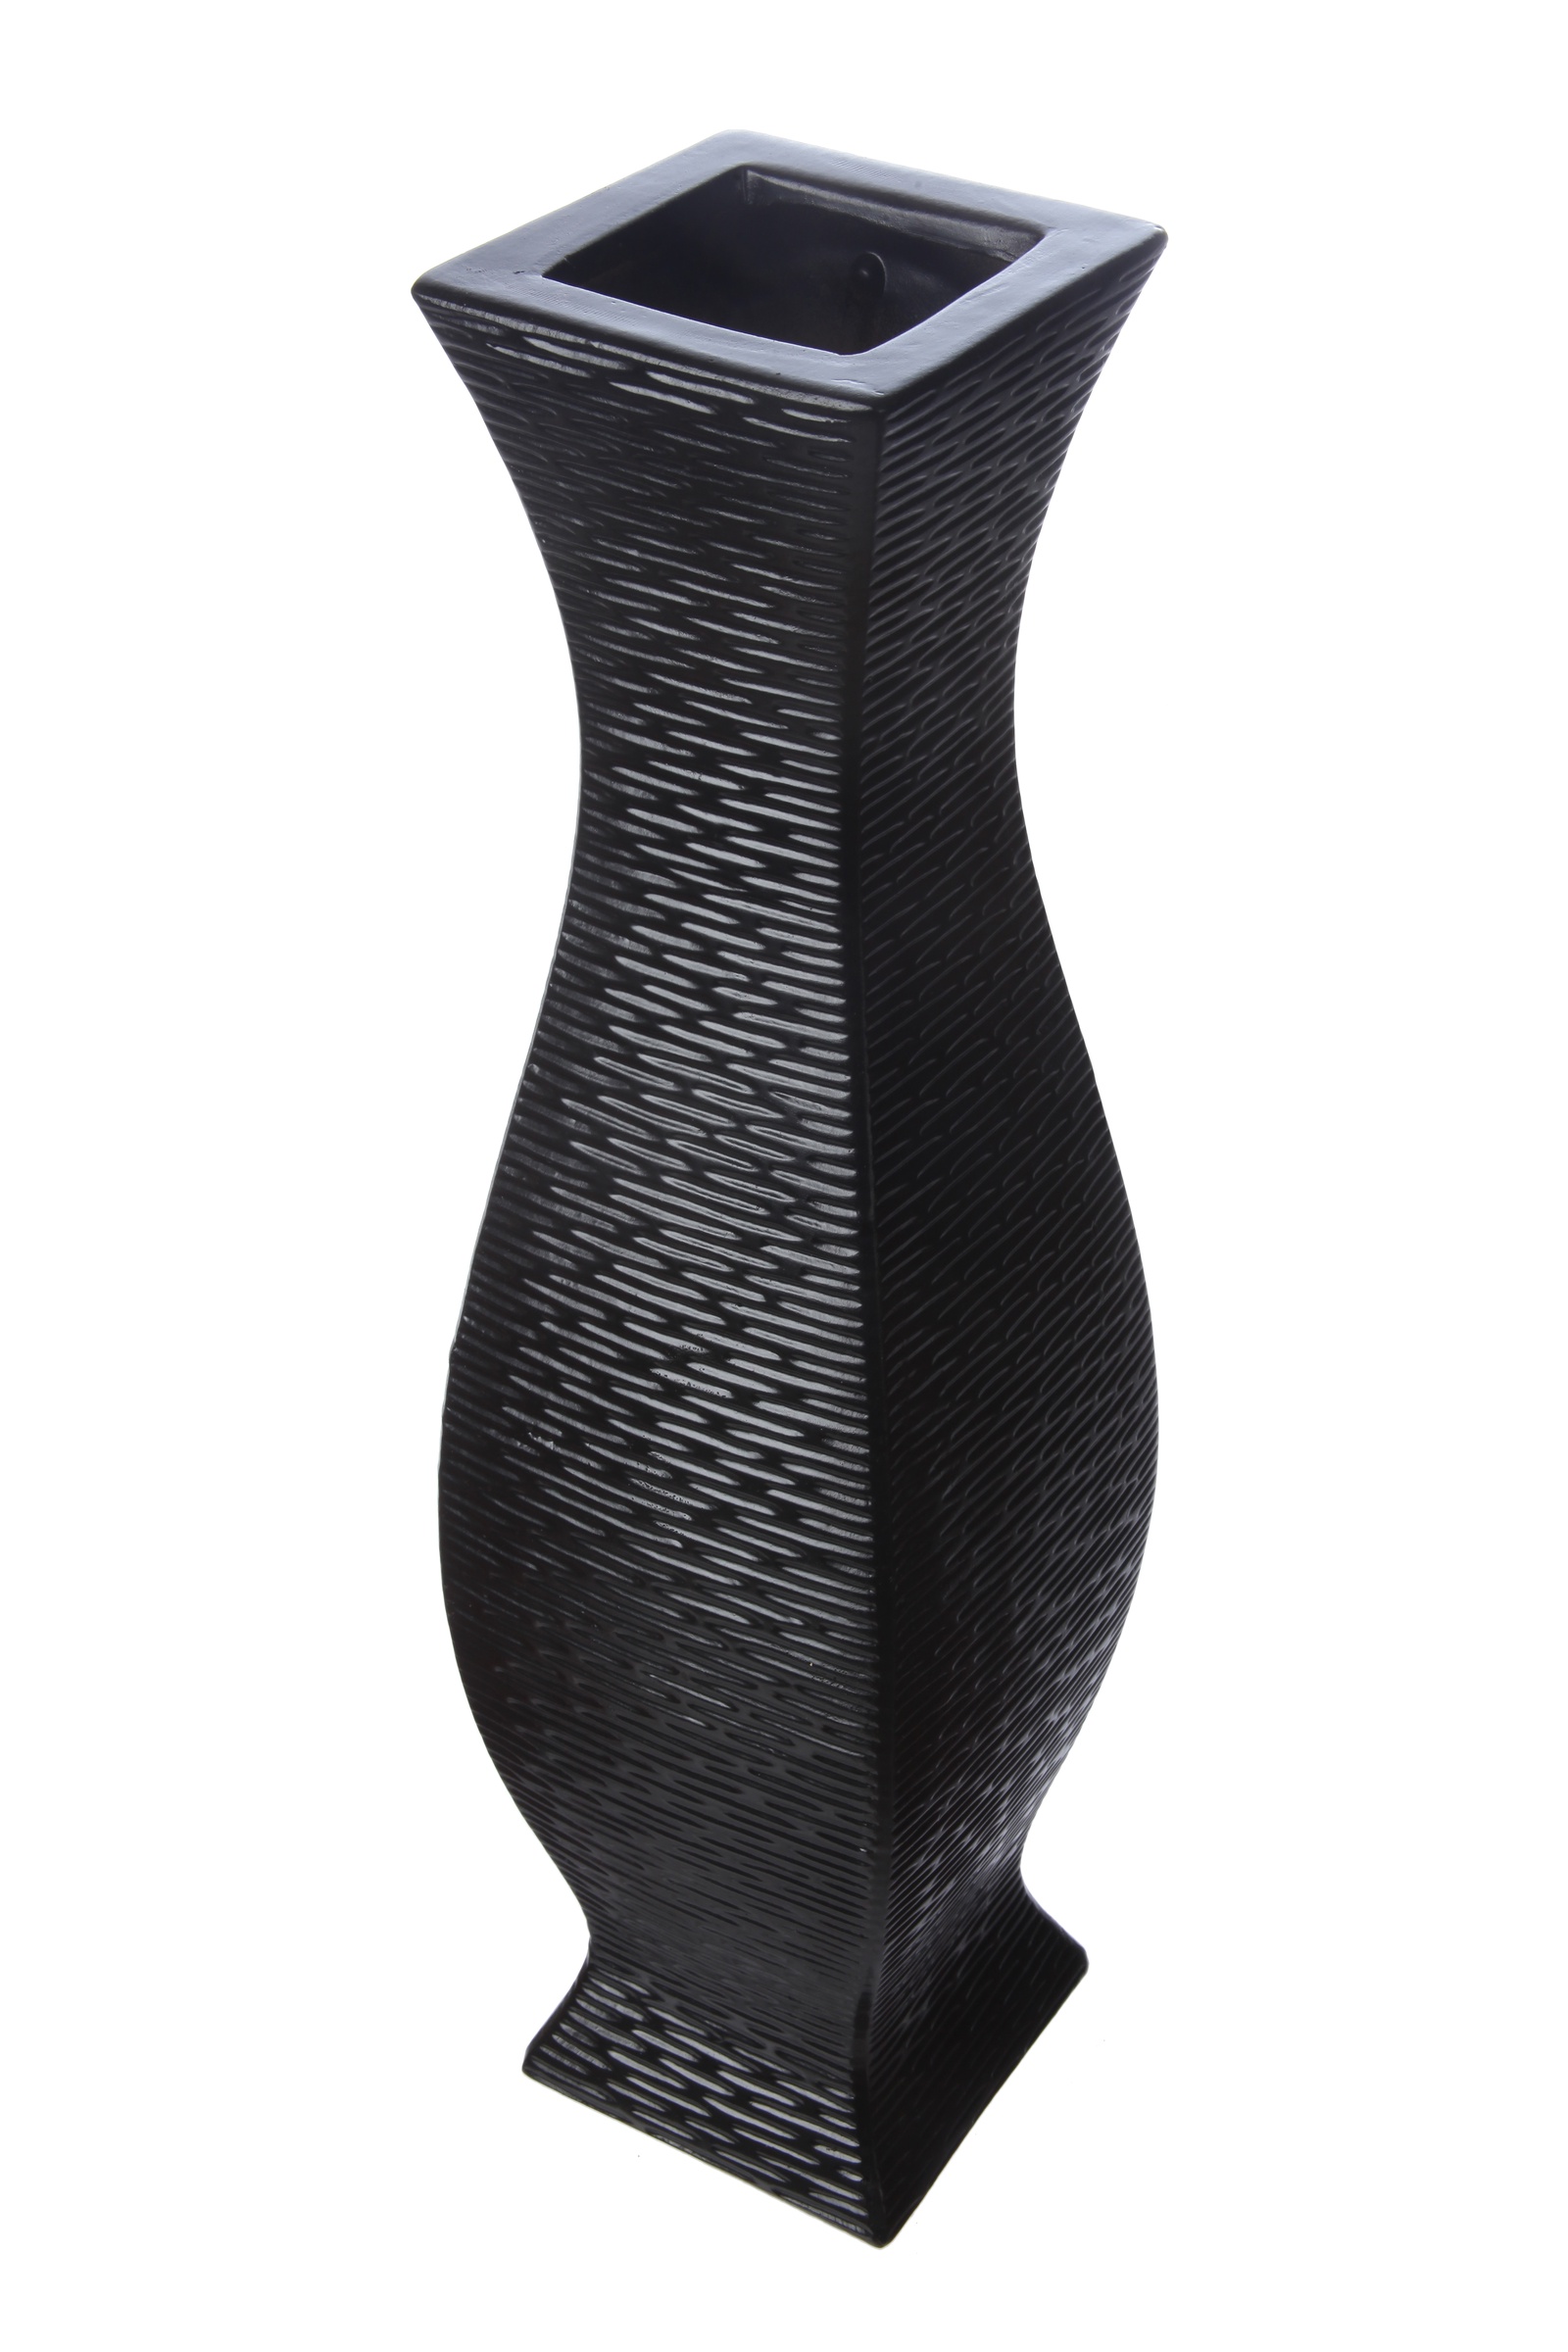 фото Ваза декоративная IsmatDecor, VB-94, напольная, керамическая, черный